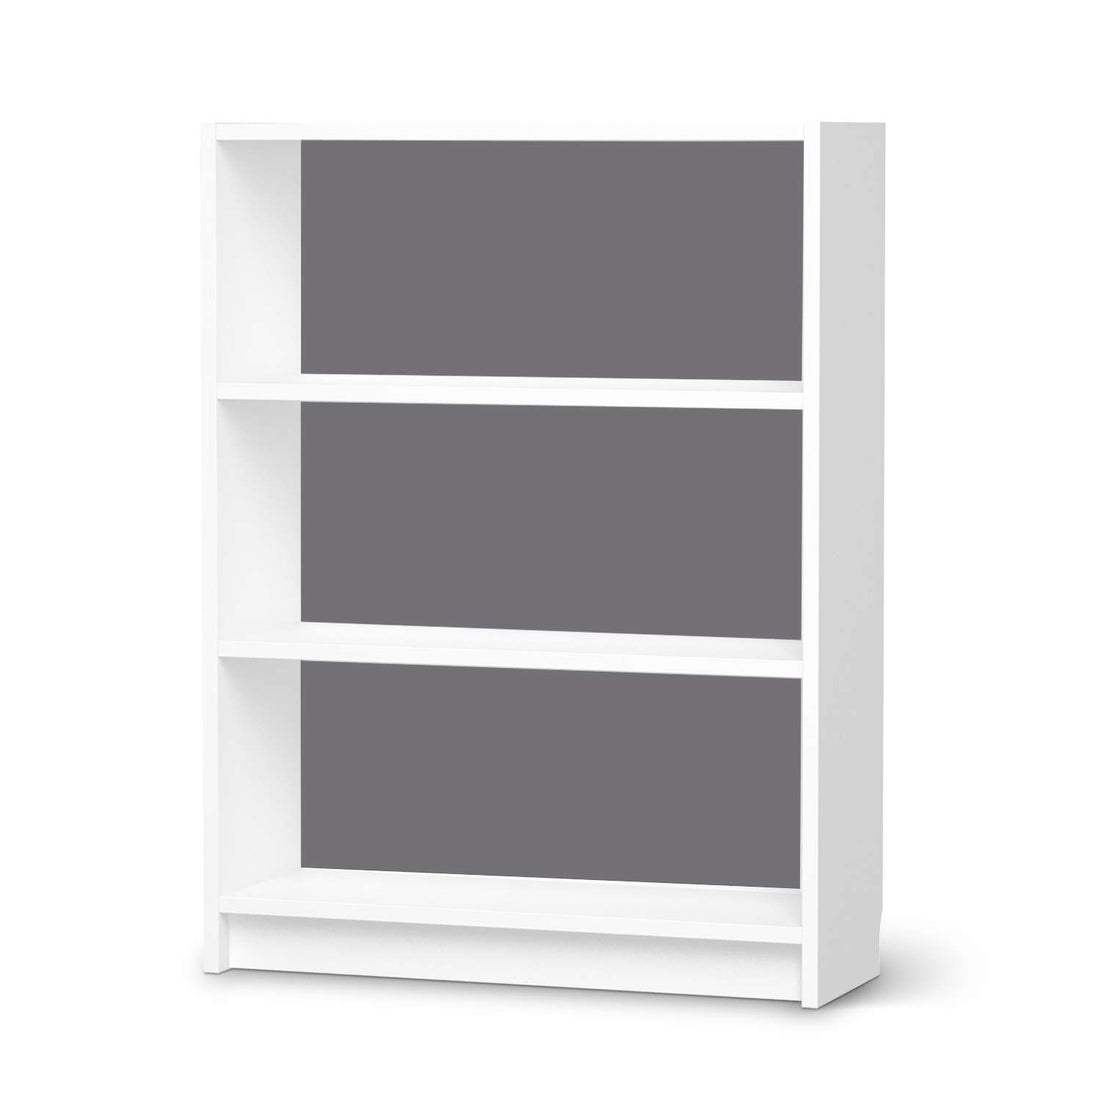 Möbelfolie Grau Light - IKEA Billy Regal 3 Fächer - weiss